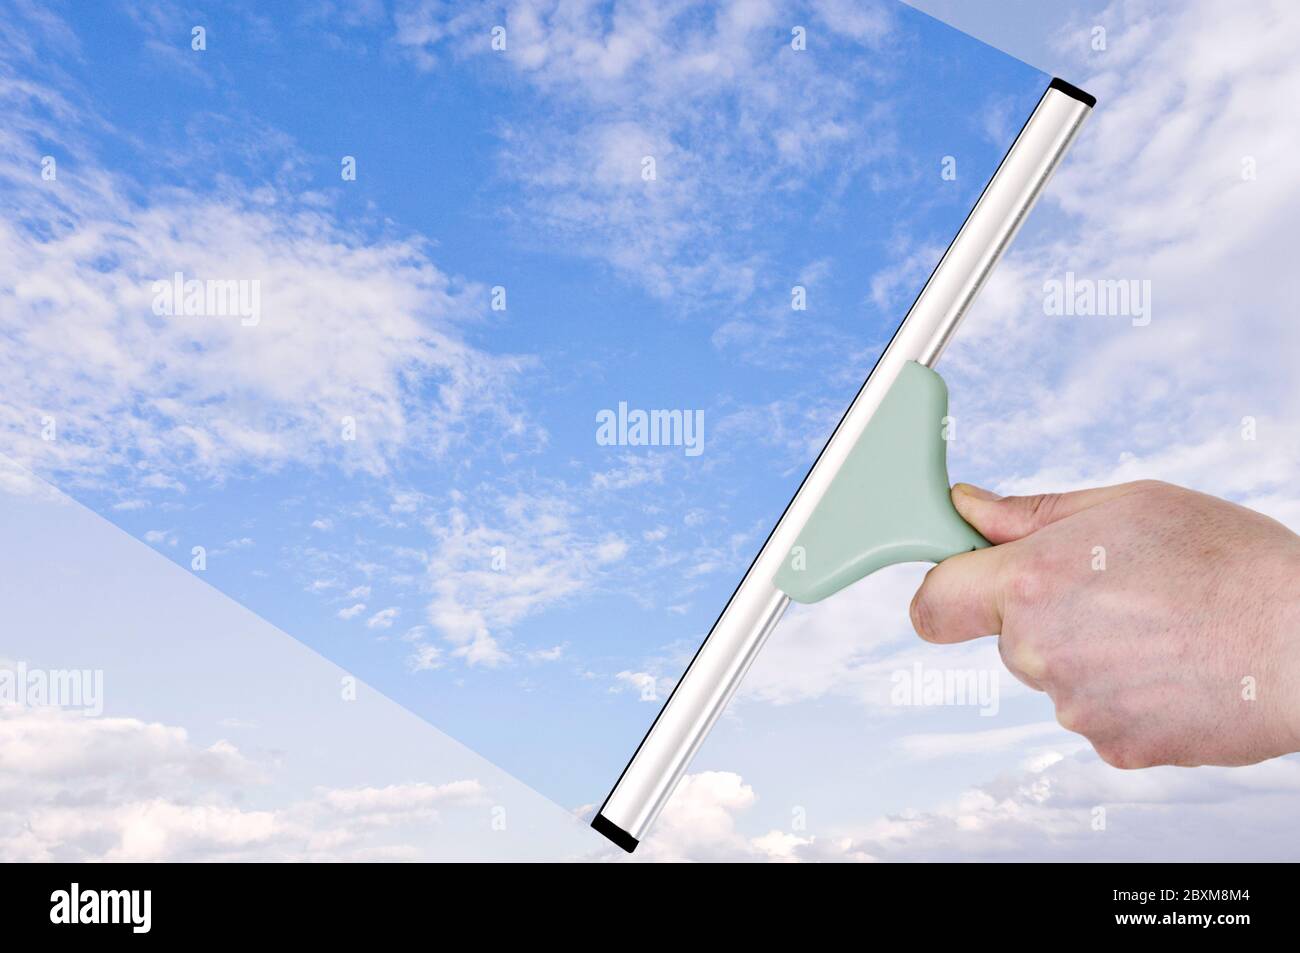 Concept de transparence. Main avec une raclette qui transforme le ciel terne en bleu Banque D'Images